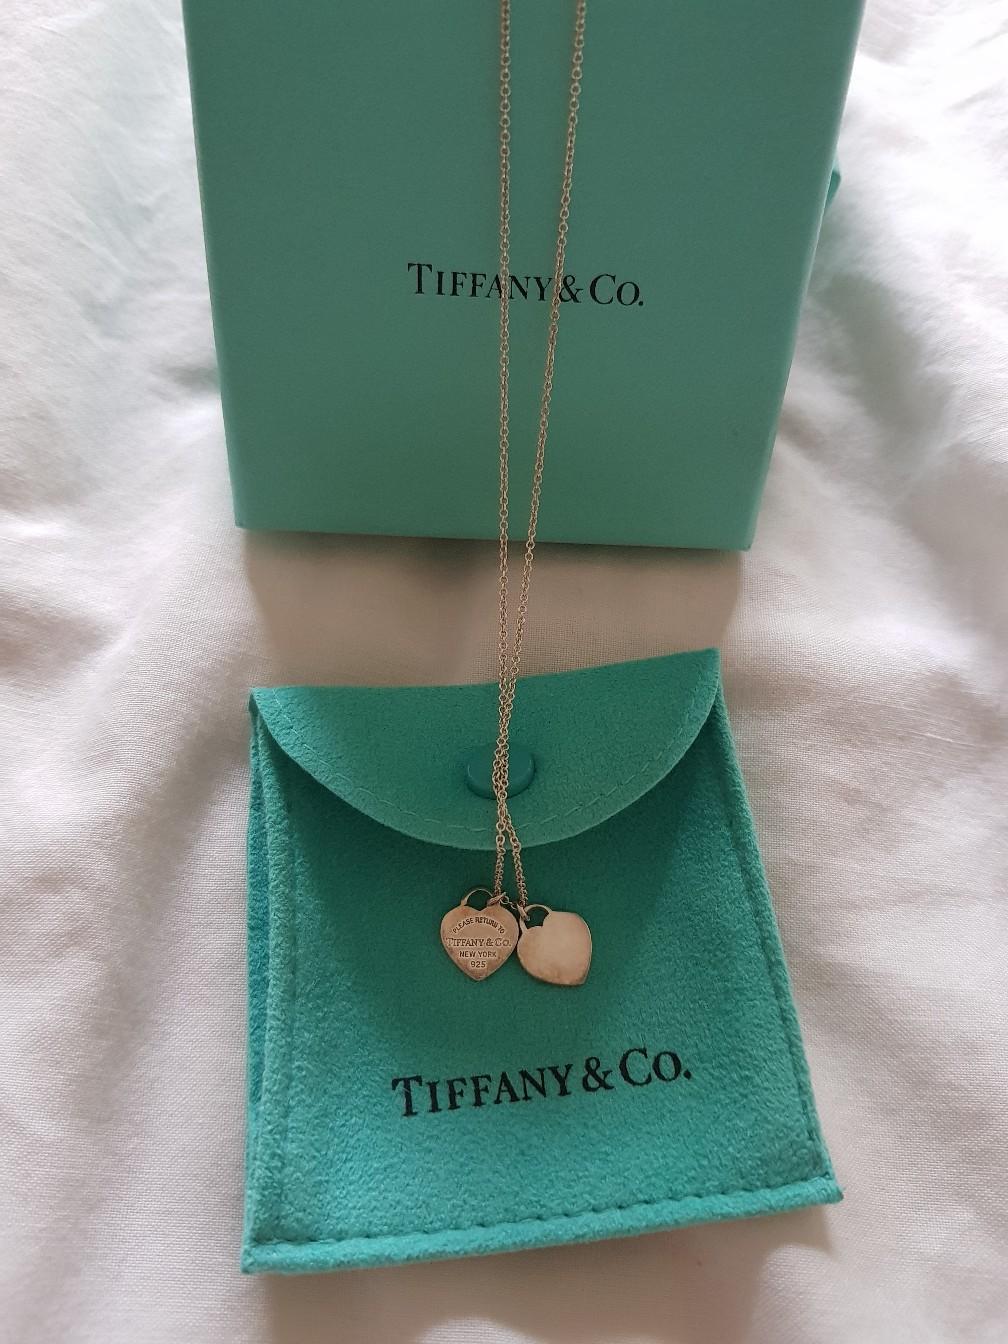 tiffany necklace green heart